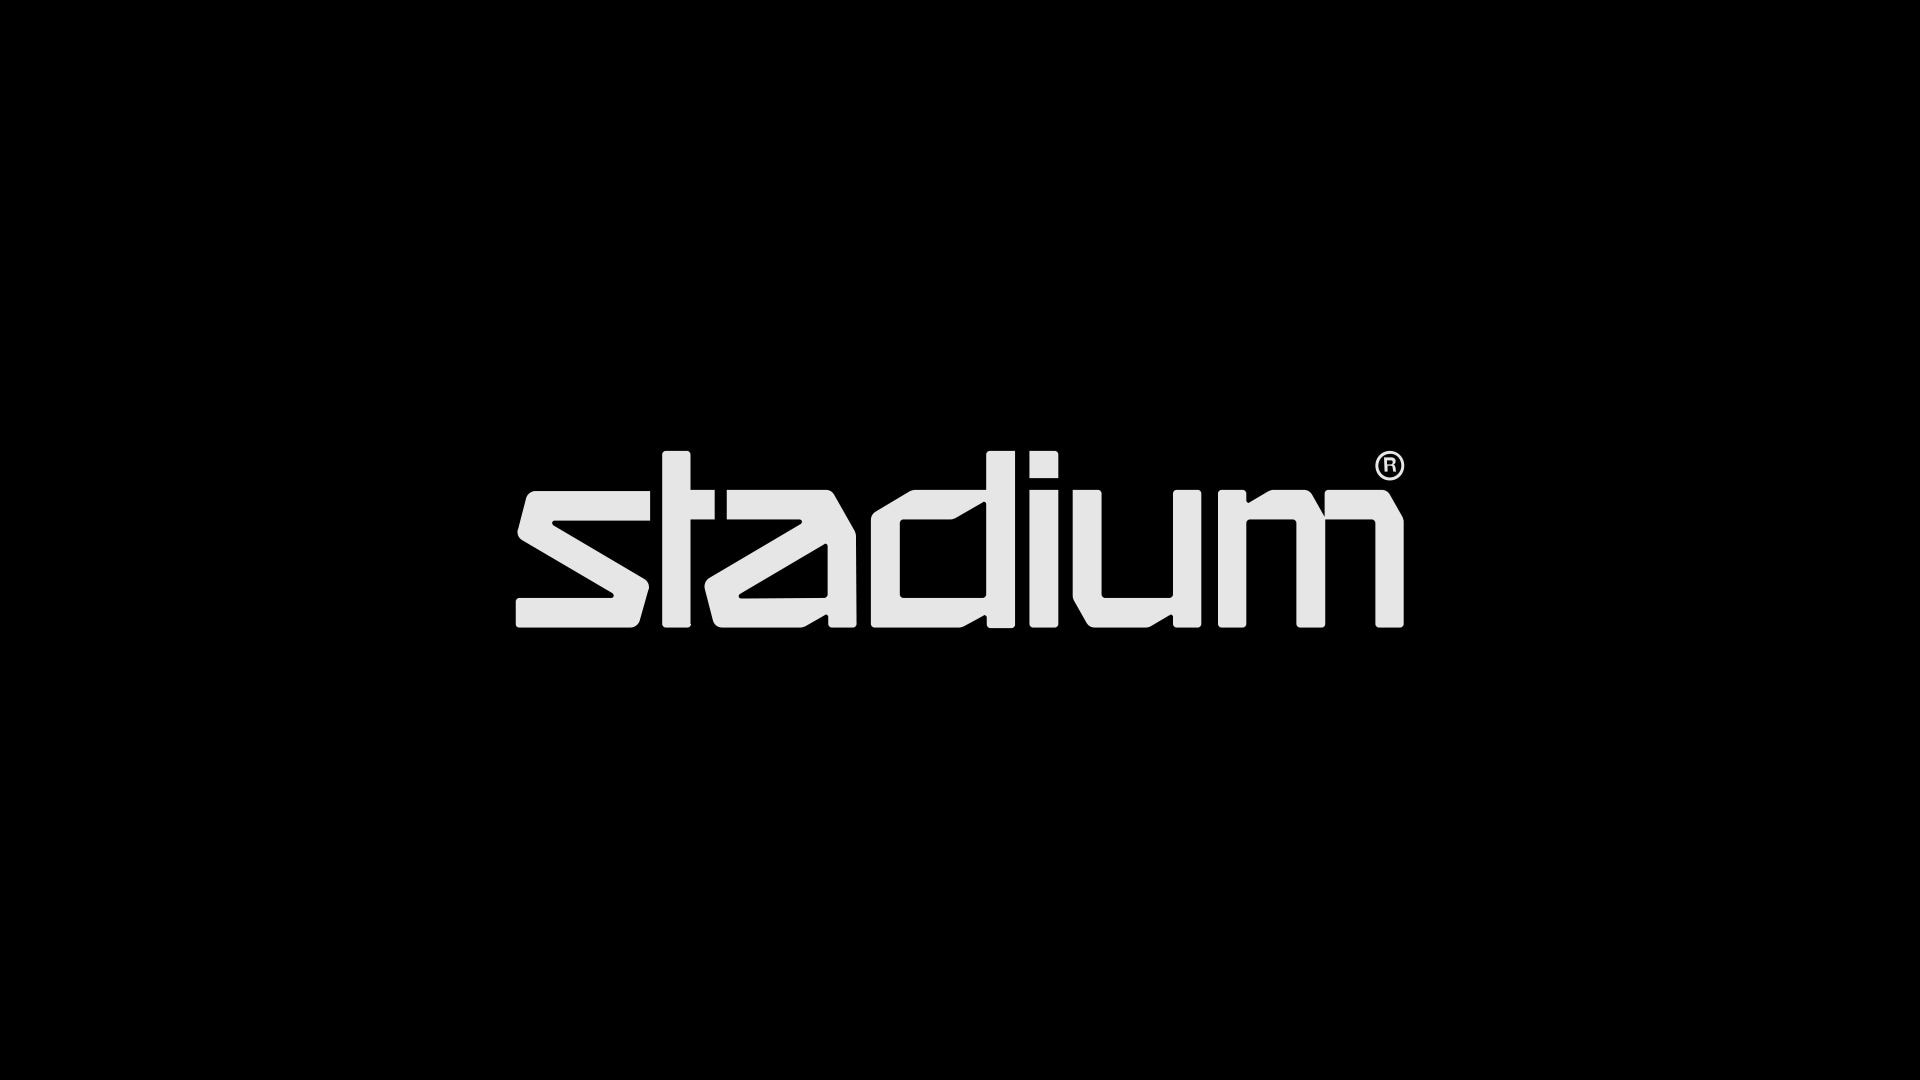 Stadium.se